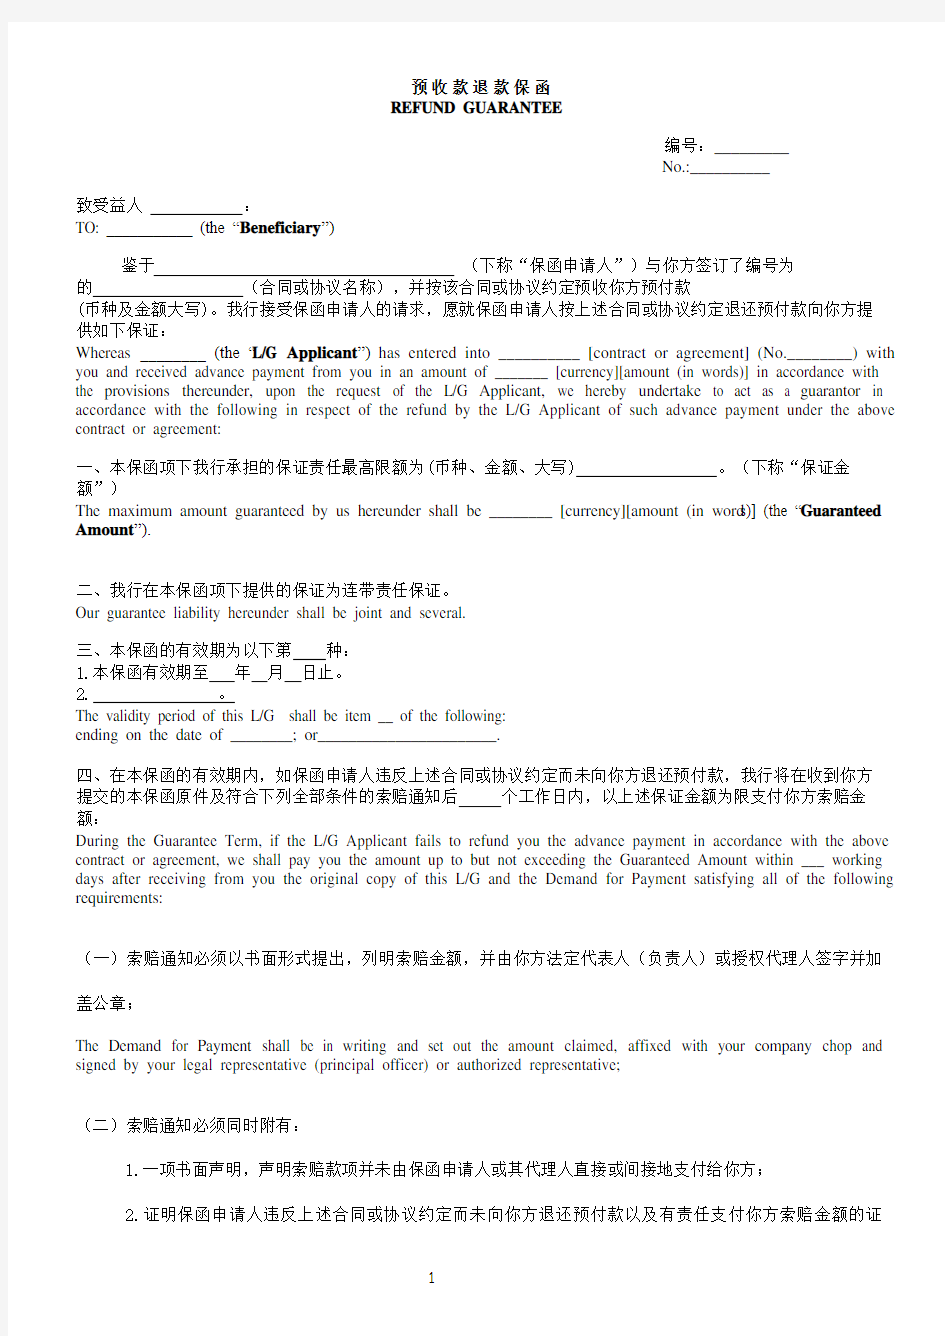 预付款保函-中英文对照(中国银行格式)